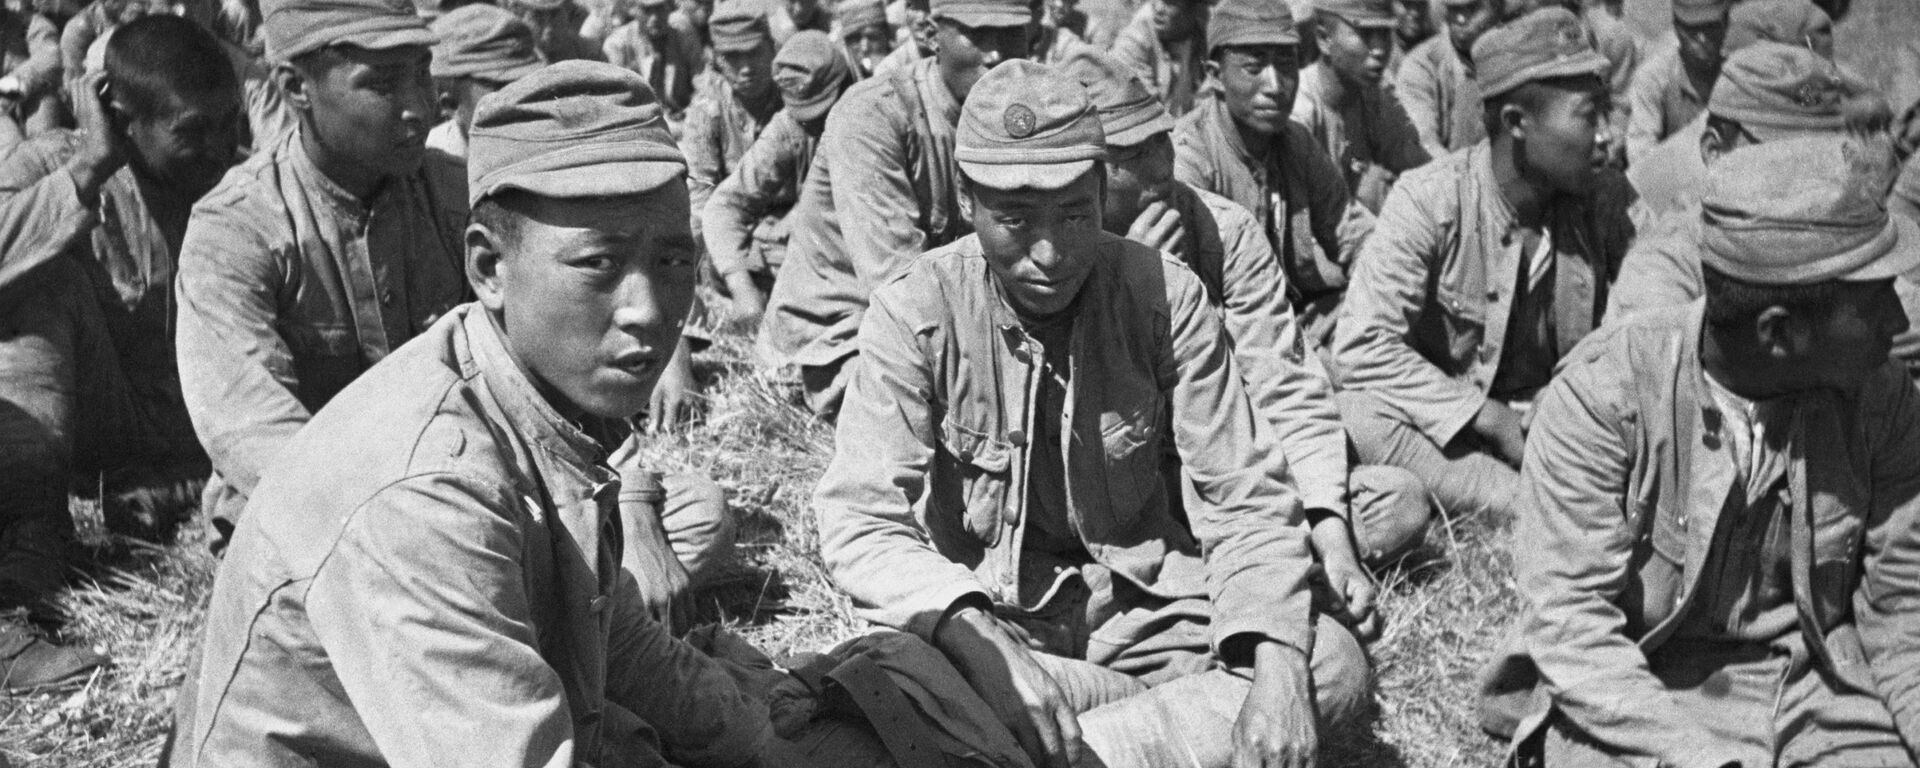 Lính Nhật bị bắt làm tù binh gần sông Khalkhin Gol. Năm 1939 - Sputnik Việt Nam, 1920, 25.08.2021